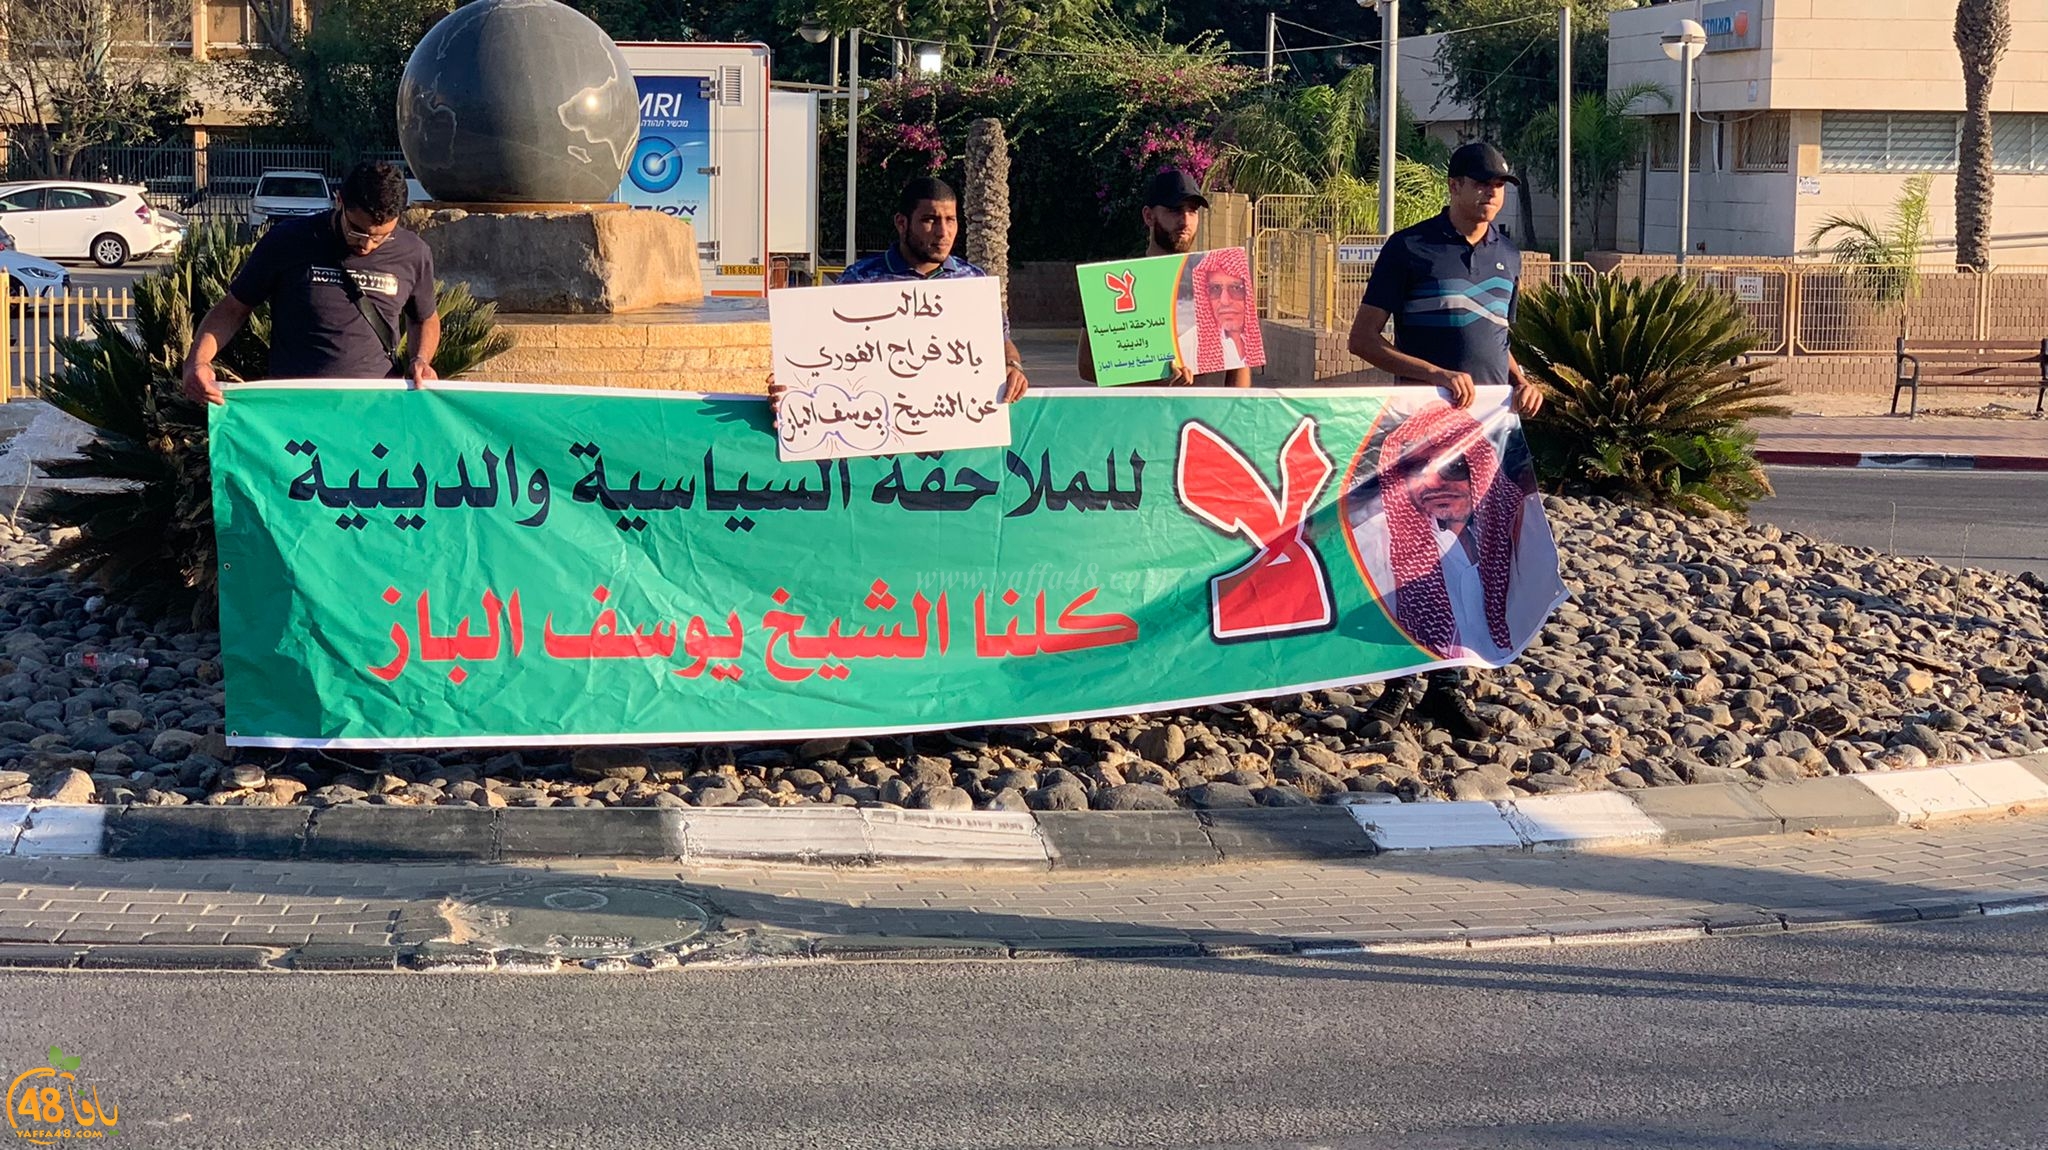  اليوم: وقفة تضامنية مع الشيخ يوسف الباز أمام مستشفى سوروكا